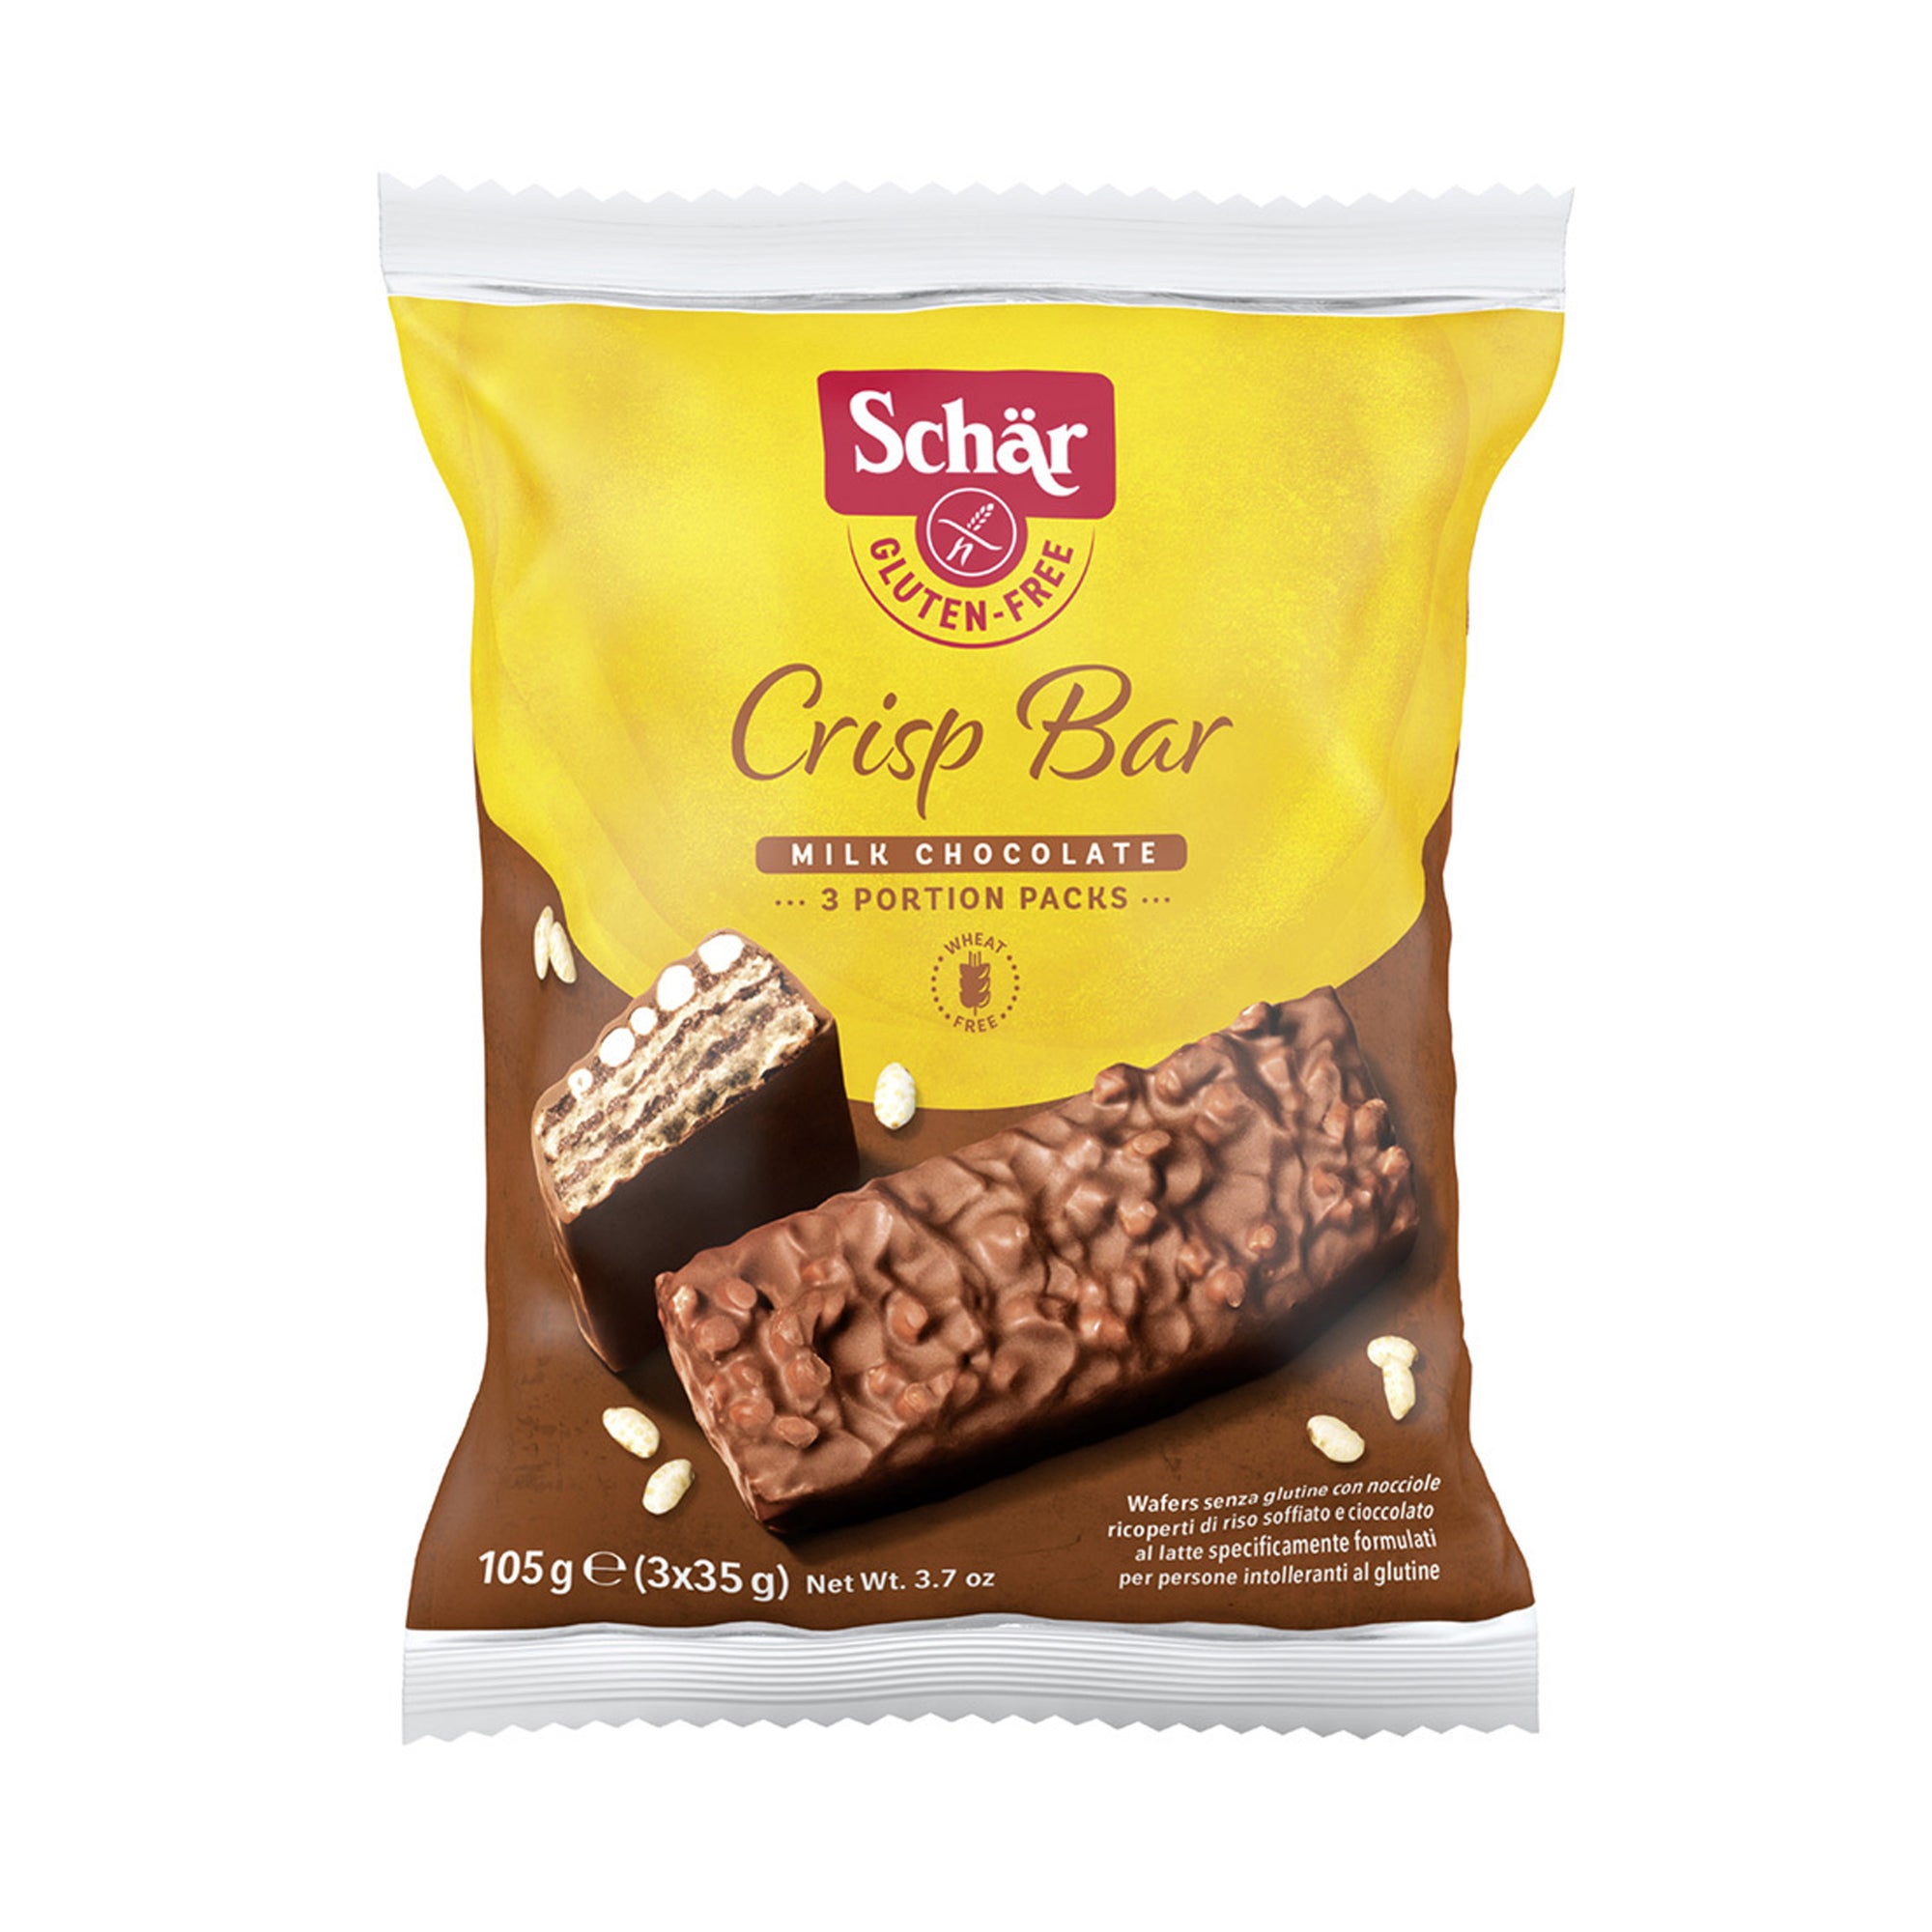 Schar Crisp Bar (3) 105g